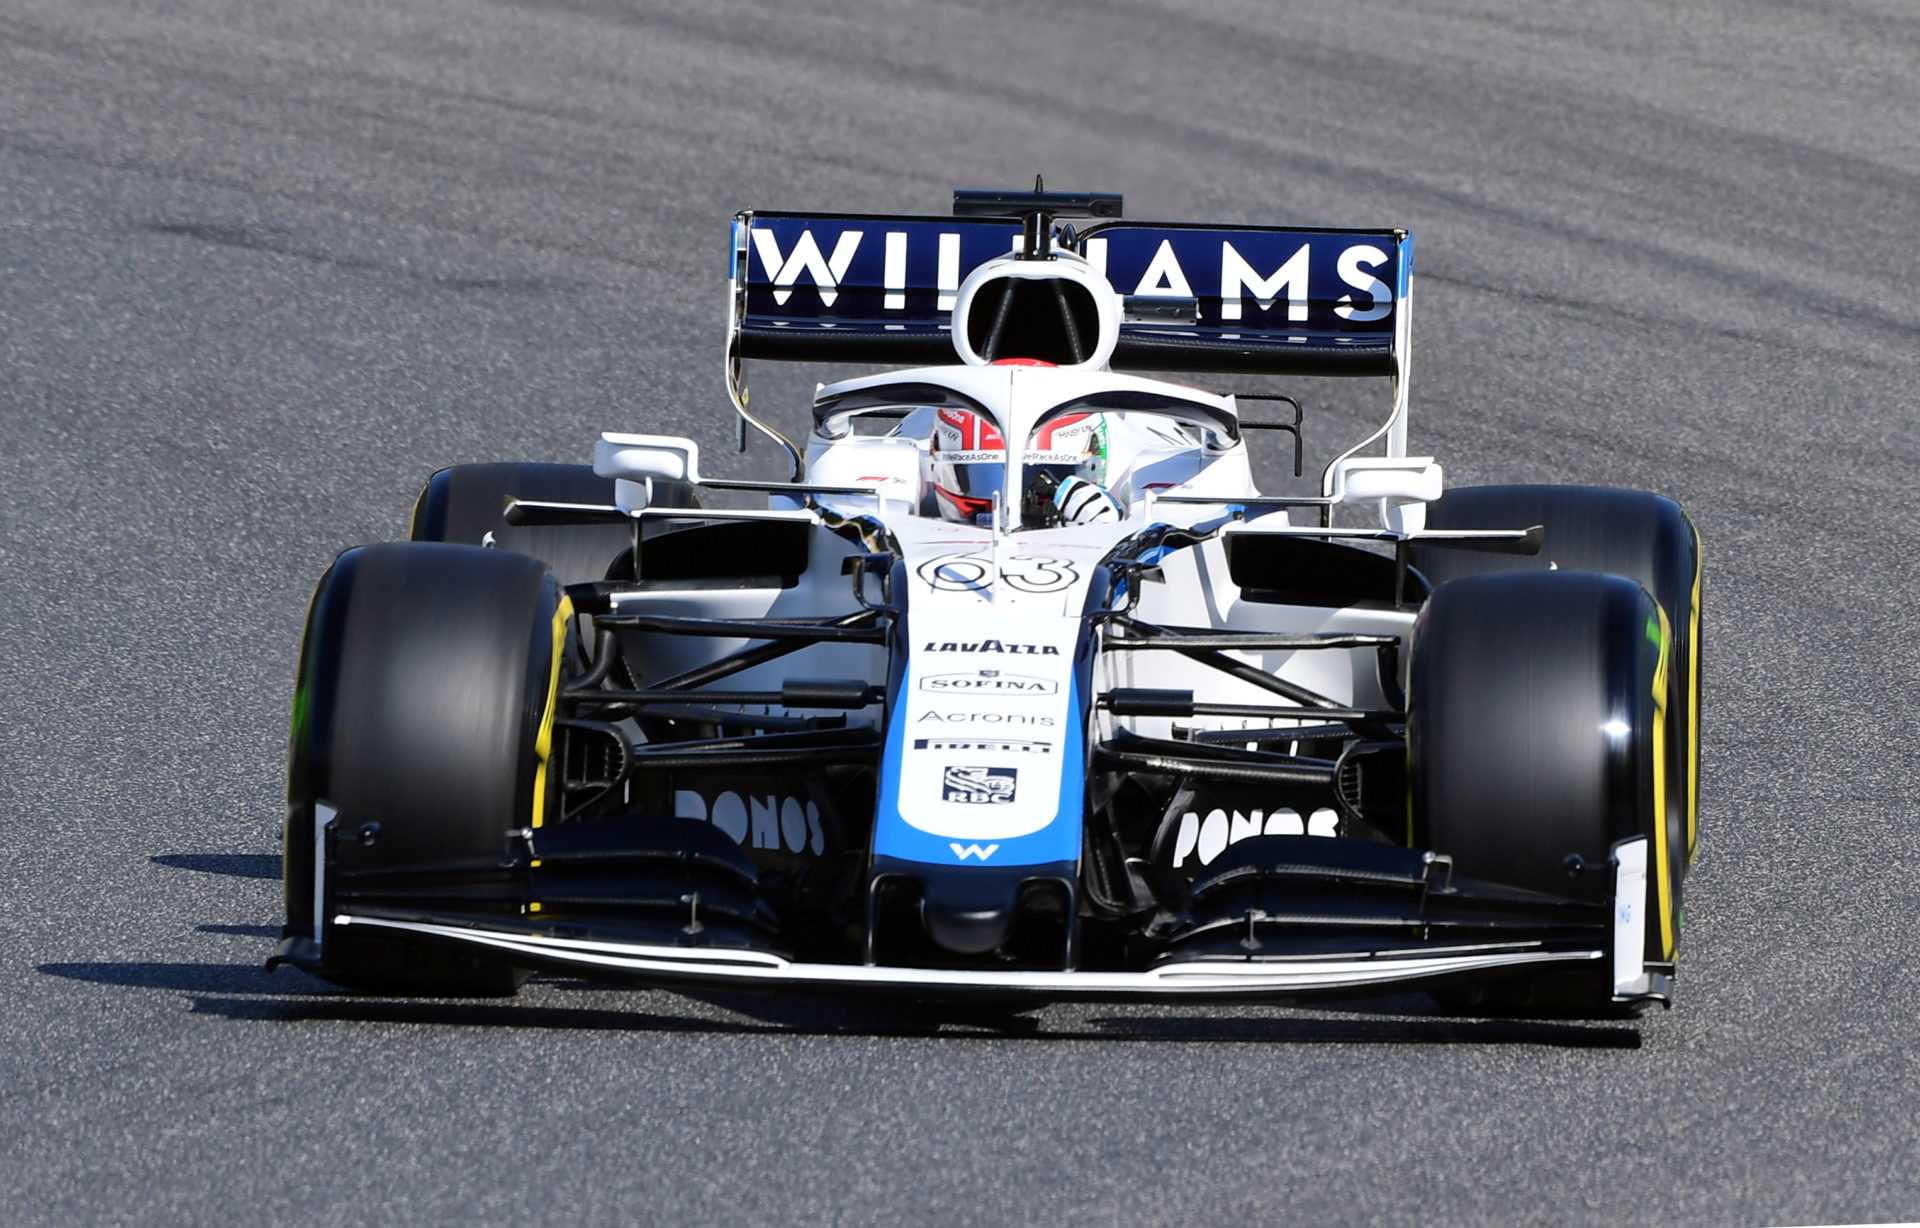 Le directeur de l’équipe révèle que les nouveaux propriétaires de Williams F1 font une différence significative après leur rachat